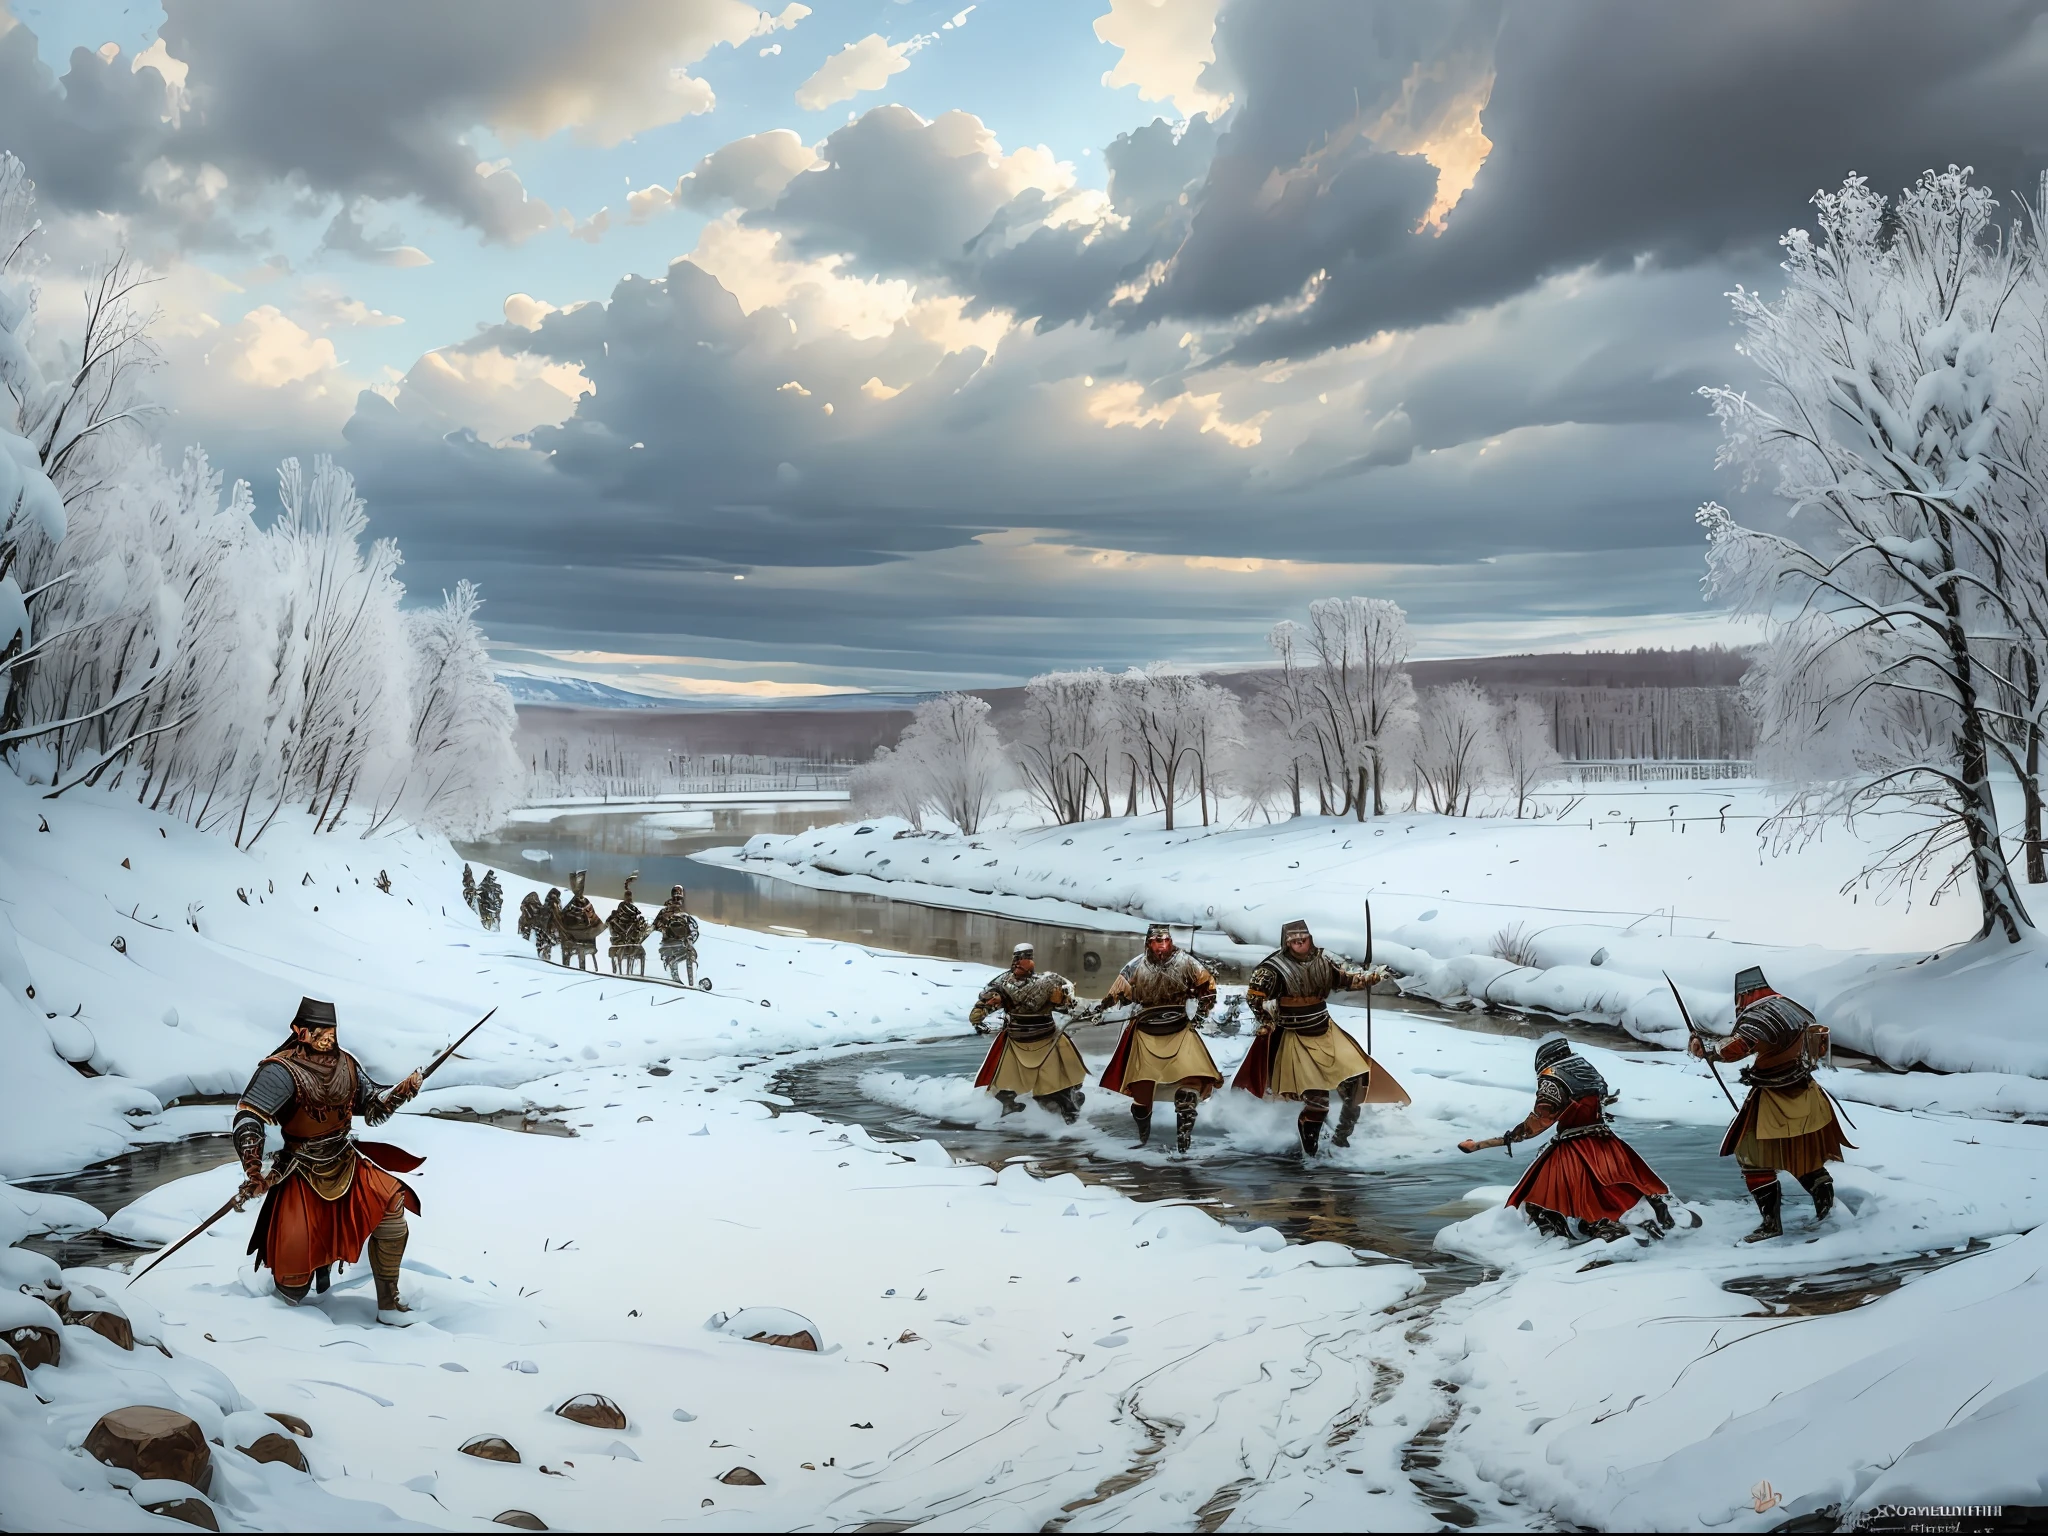 اصنع لوحة زيتية على طراز عصر النهضة المتأخر تصور معركة بين جيشين رومانيين قديمين ذات طابع جرماني على ضفة نهر ثلجية --سيارات